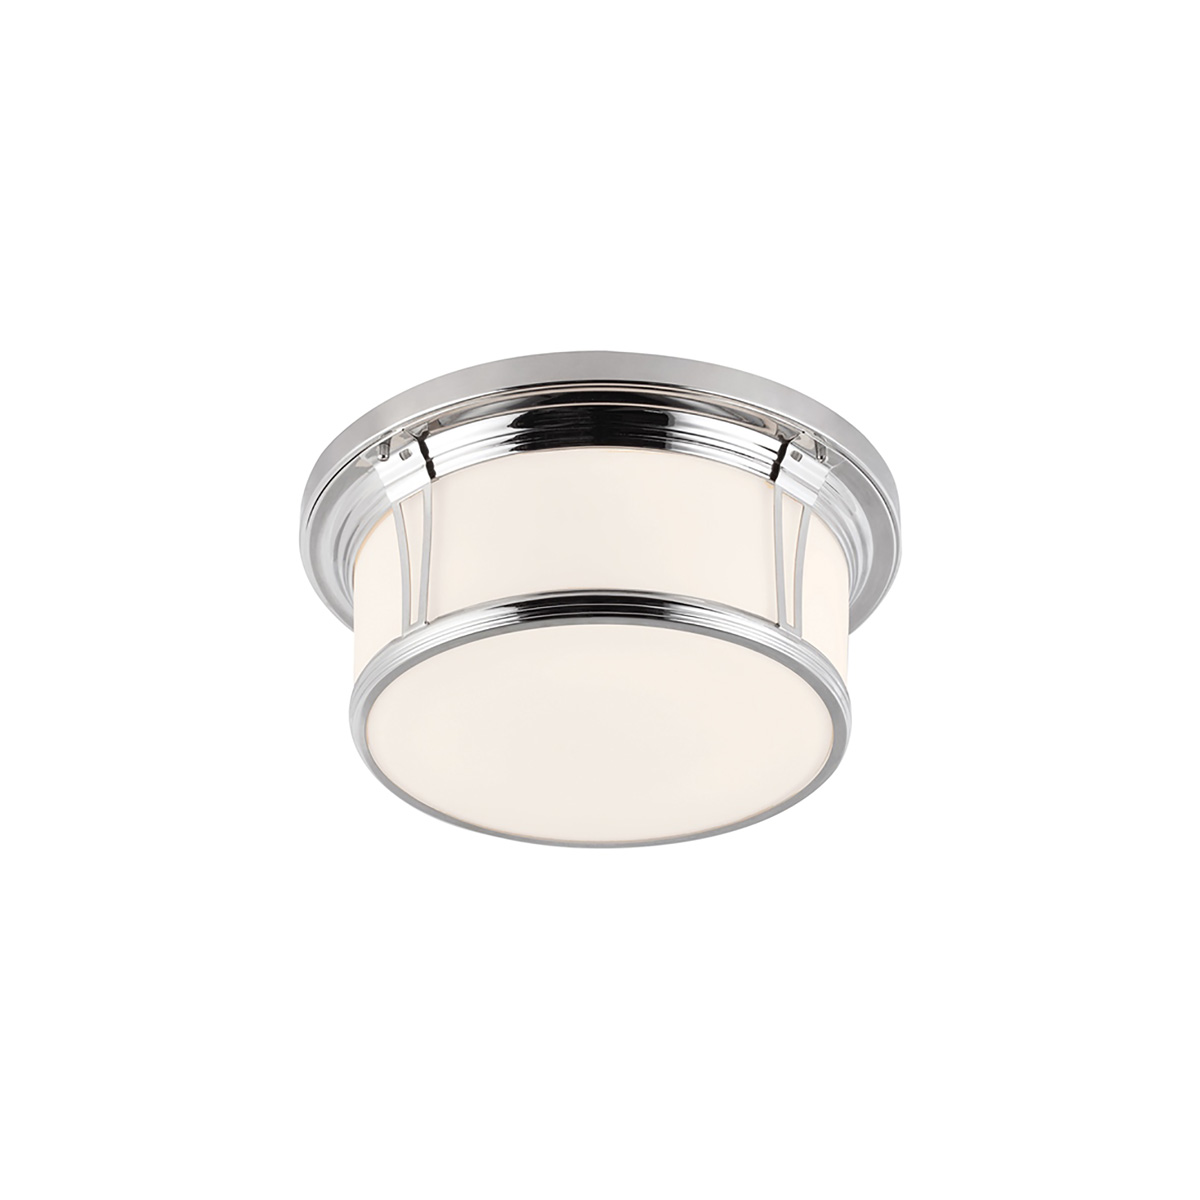 Потолочный светильник для ванных комнат FE-WOODWARD-F-L, Потолочные светильники для ванных комнат Классический | Хром/Никель Белый/Бежевый | Ванная комната.